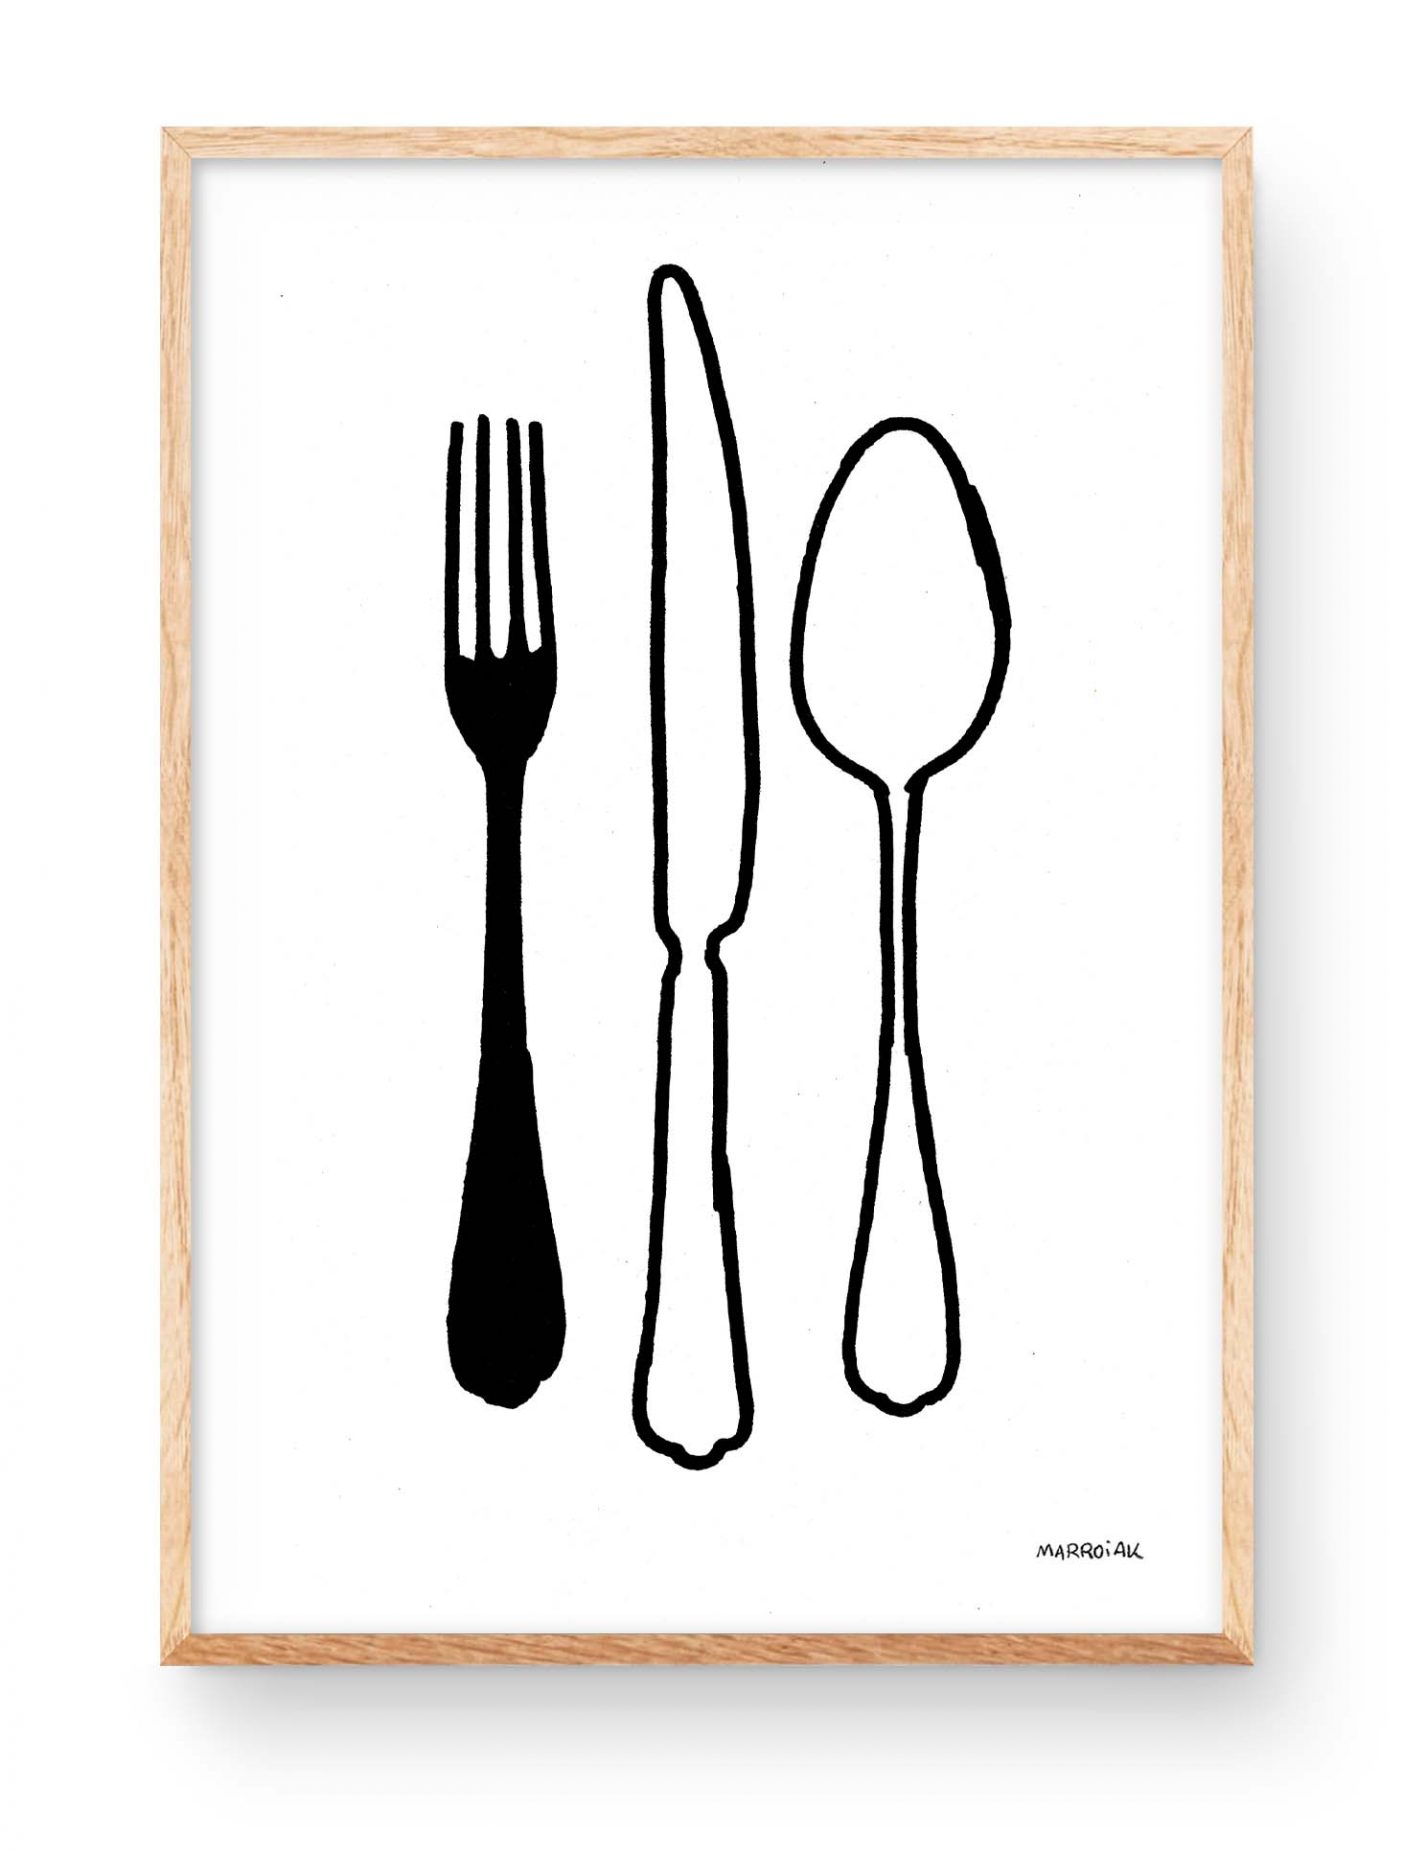 Lámina con una ilustración en blanco y negro de varios cubiertos de cocina y mesa.